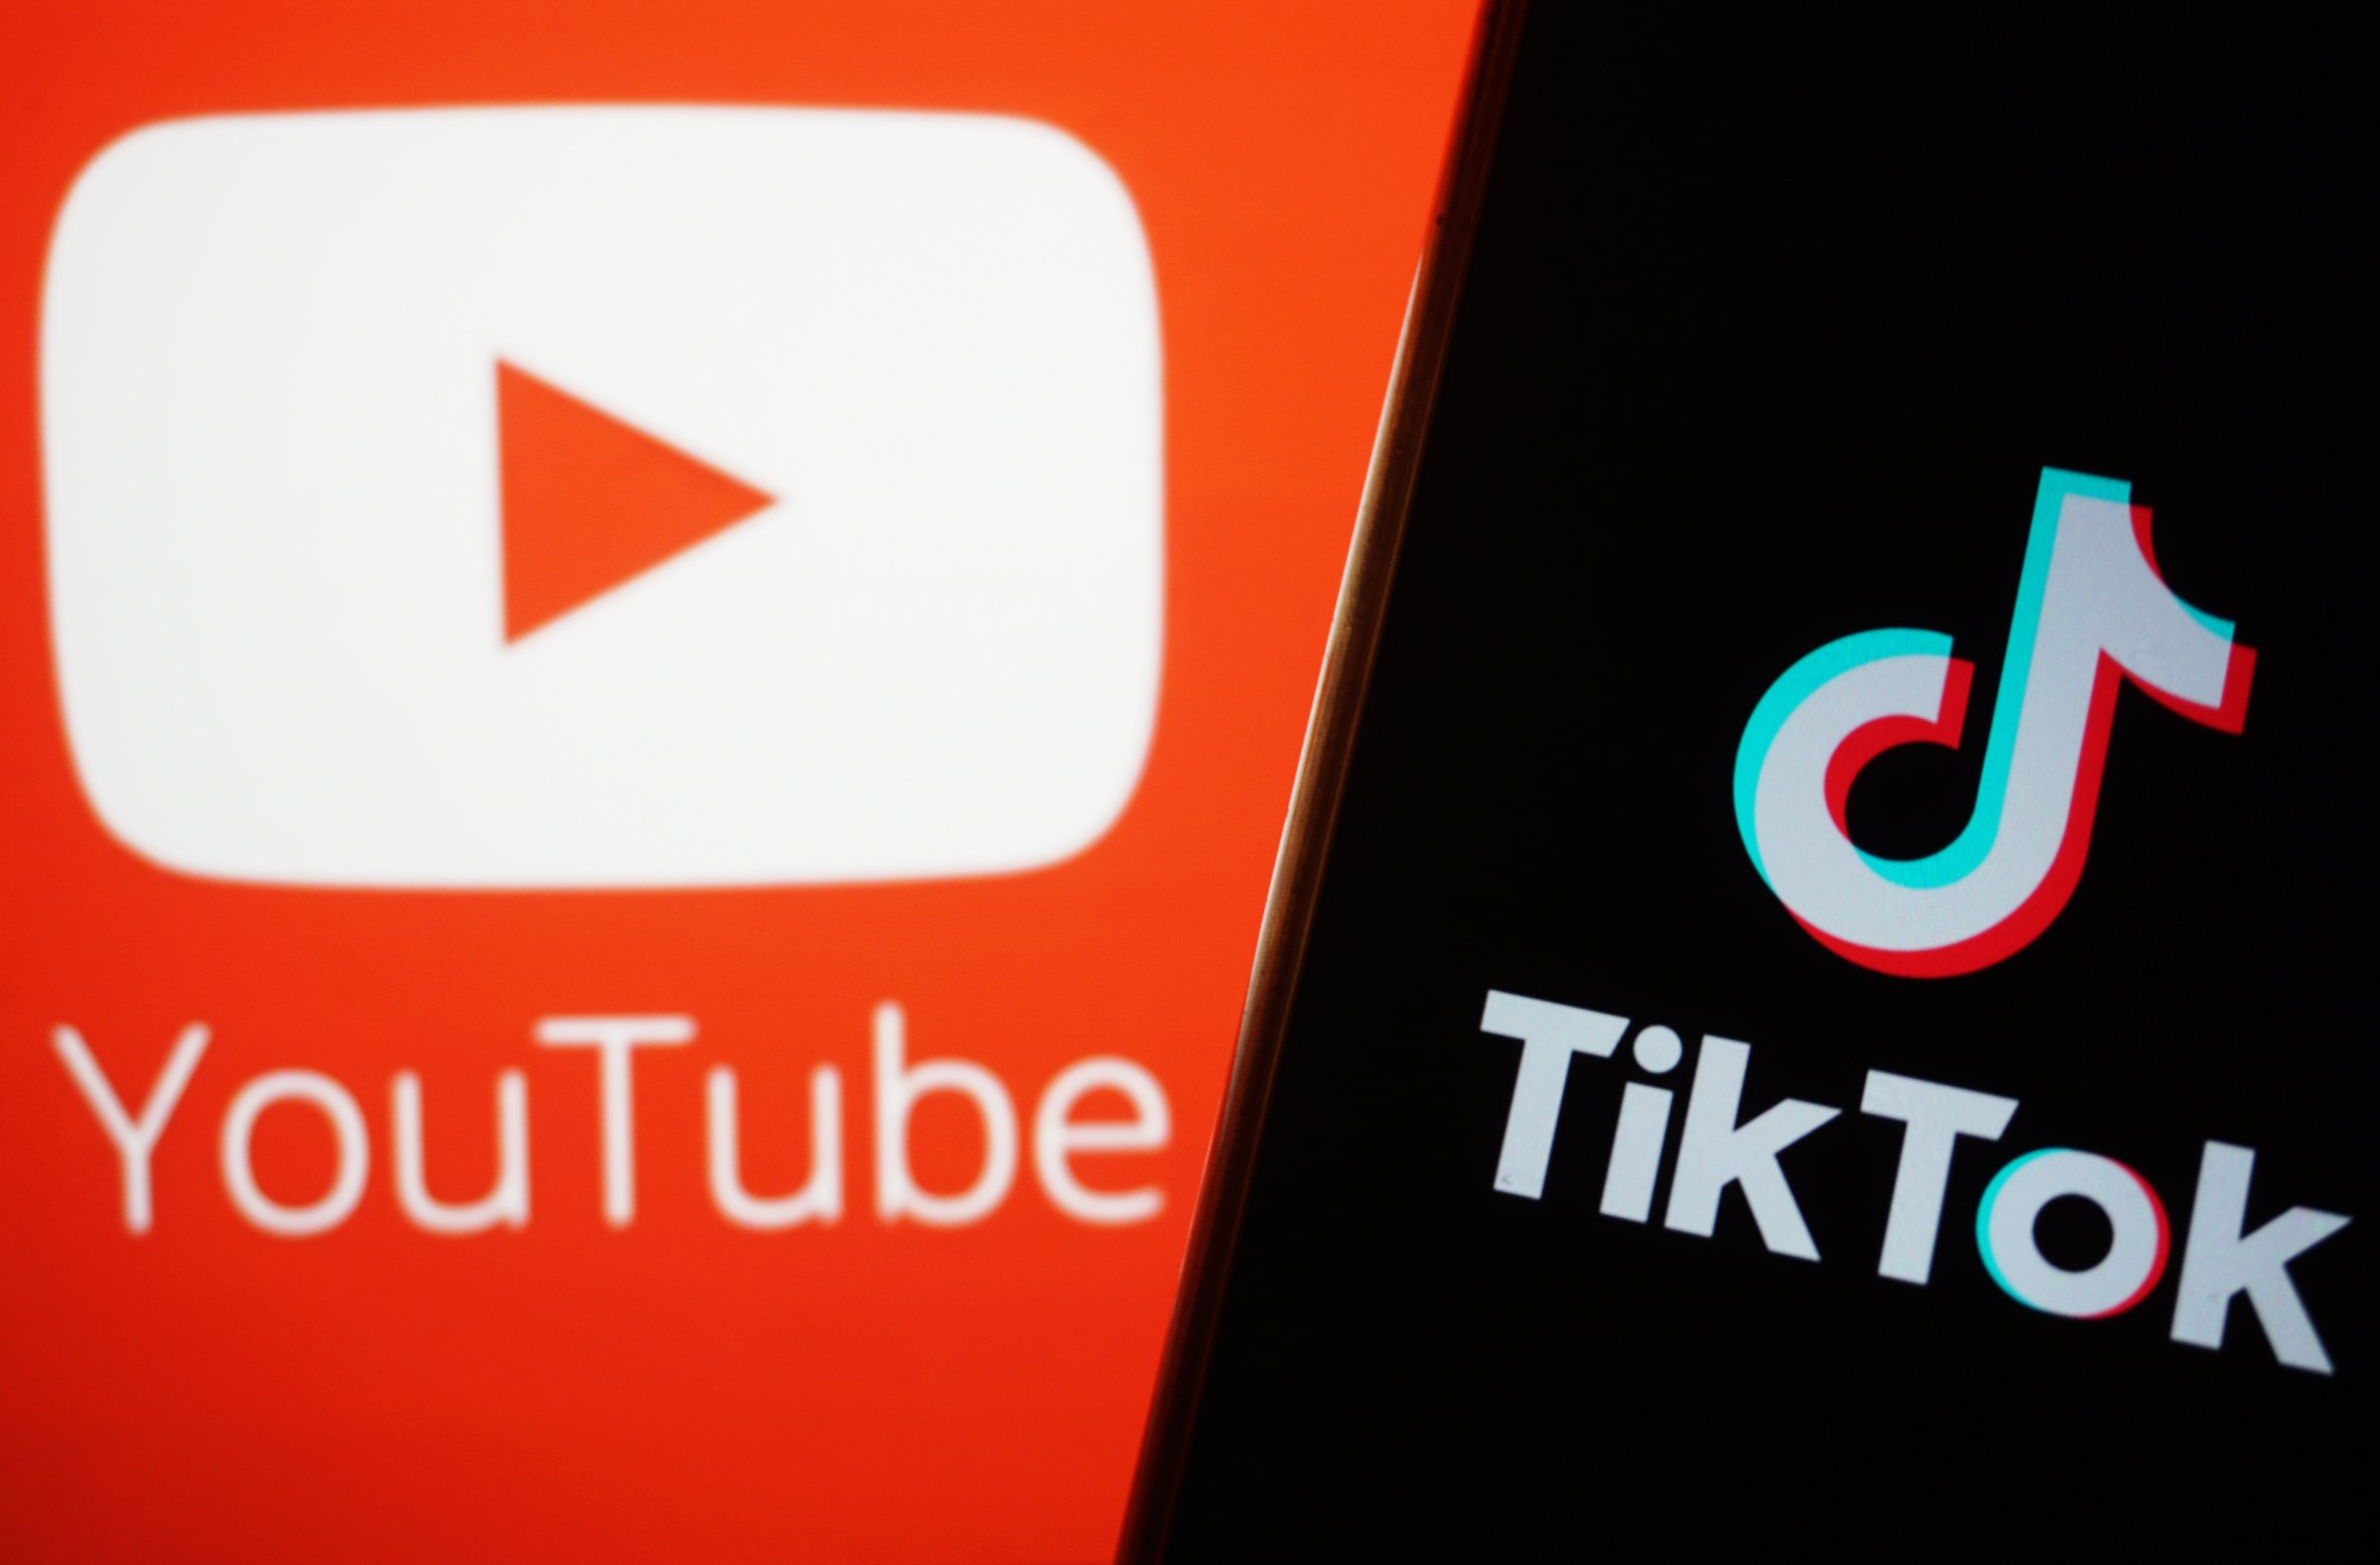 The YouTube and TikTok logos